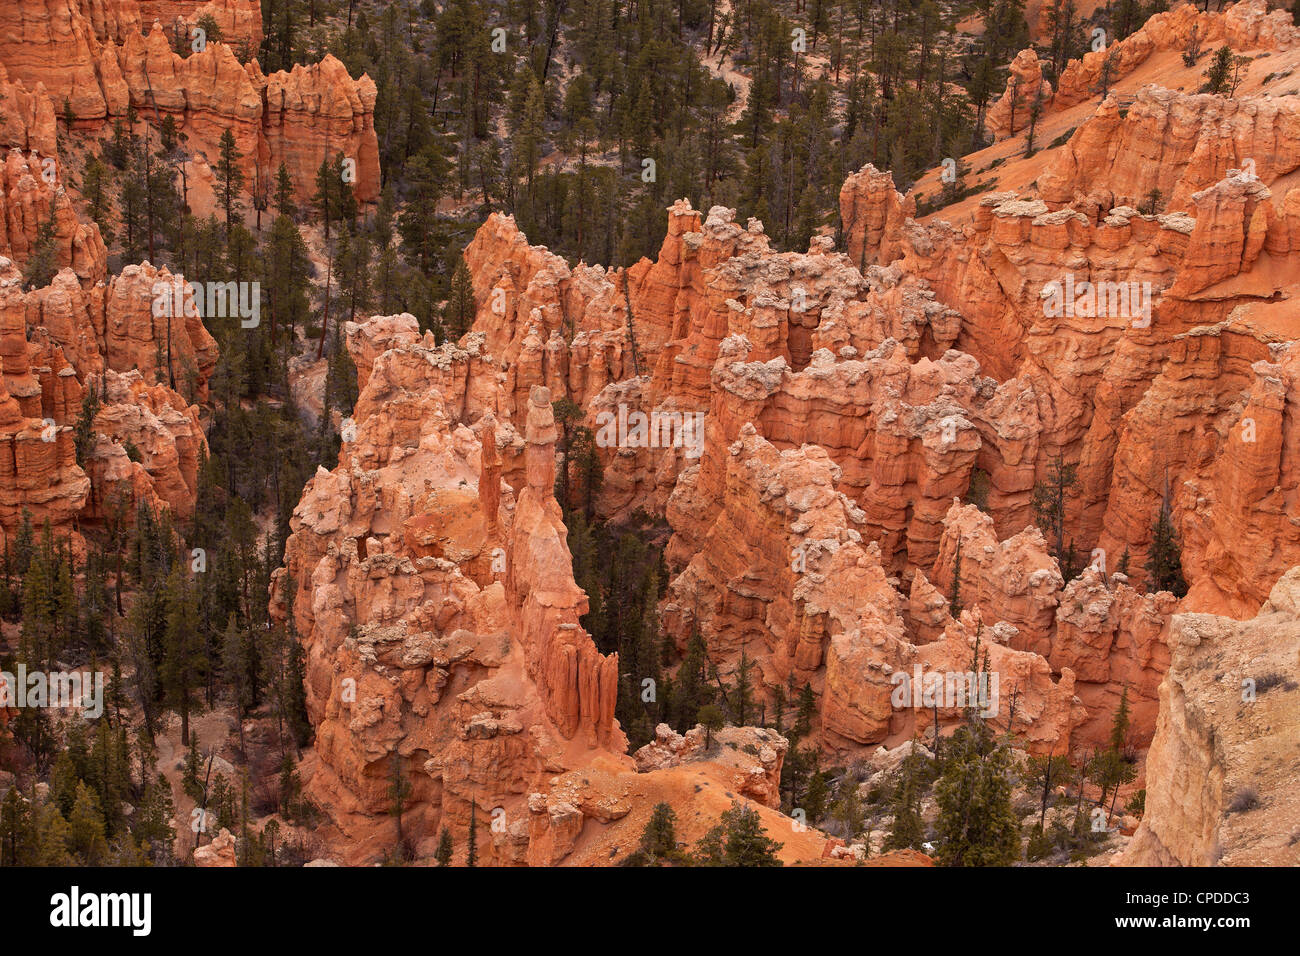 Le Parc National de Bryce Canyon dans l'Utah du sud. Spectaculaire et robustes falaises en pierre rouge, formations intéressantes dans la vallée. Don Despain Banque D'Images